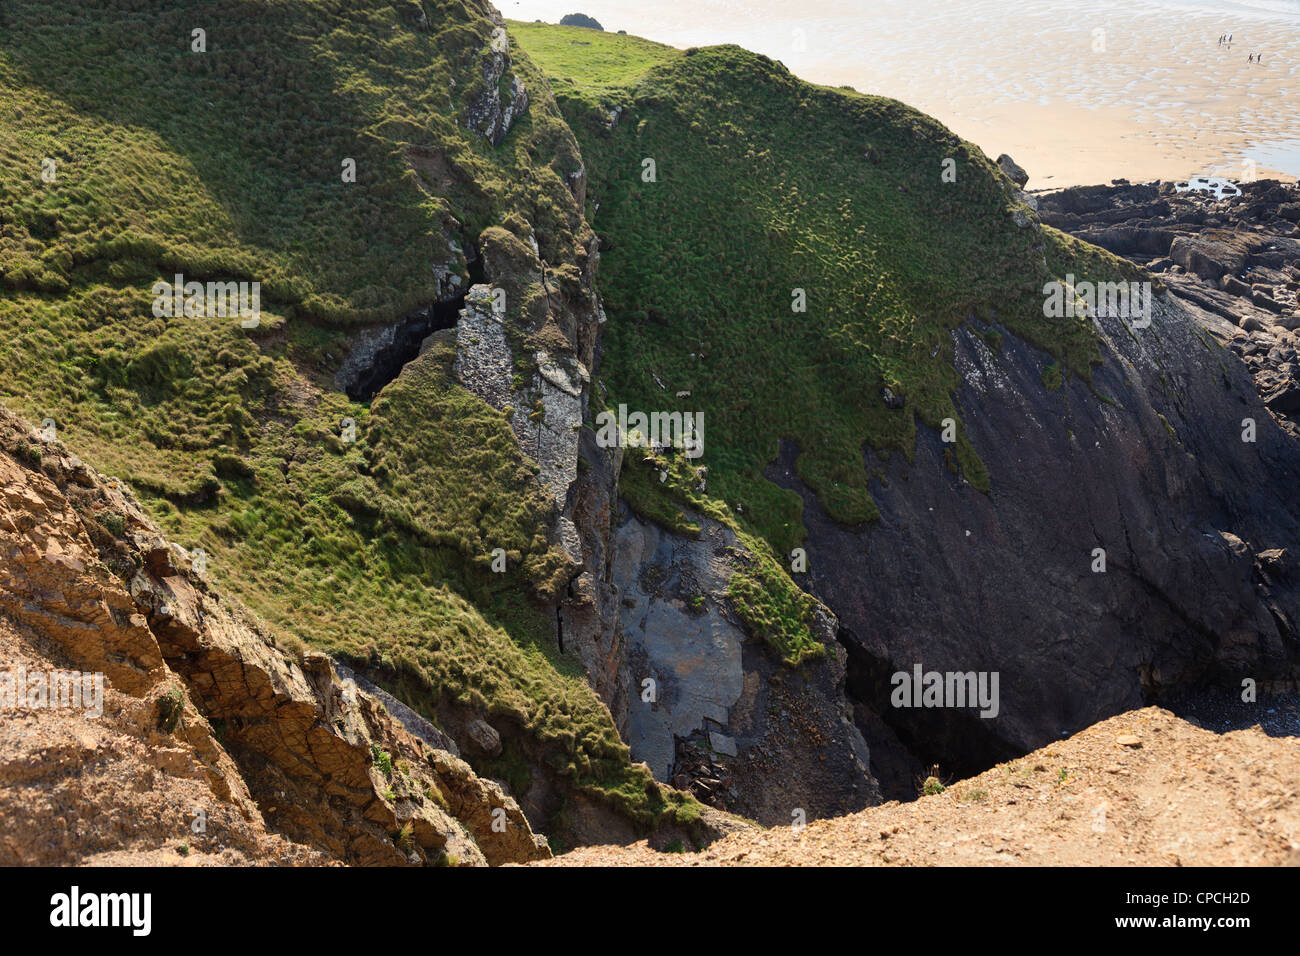 Felsen, knacken und brechen weg von den erodierenden Klippen oberhalb des Strandes bei Bude, Cornwall, England, UK, Großbritannien Stockfoto